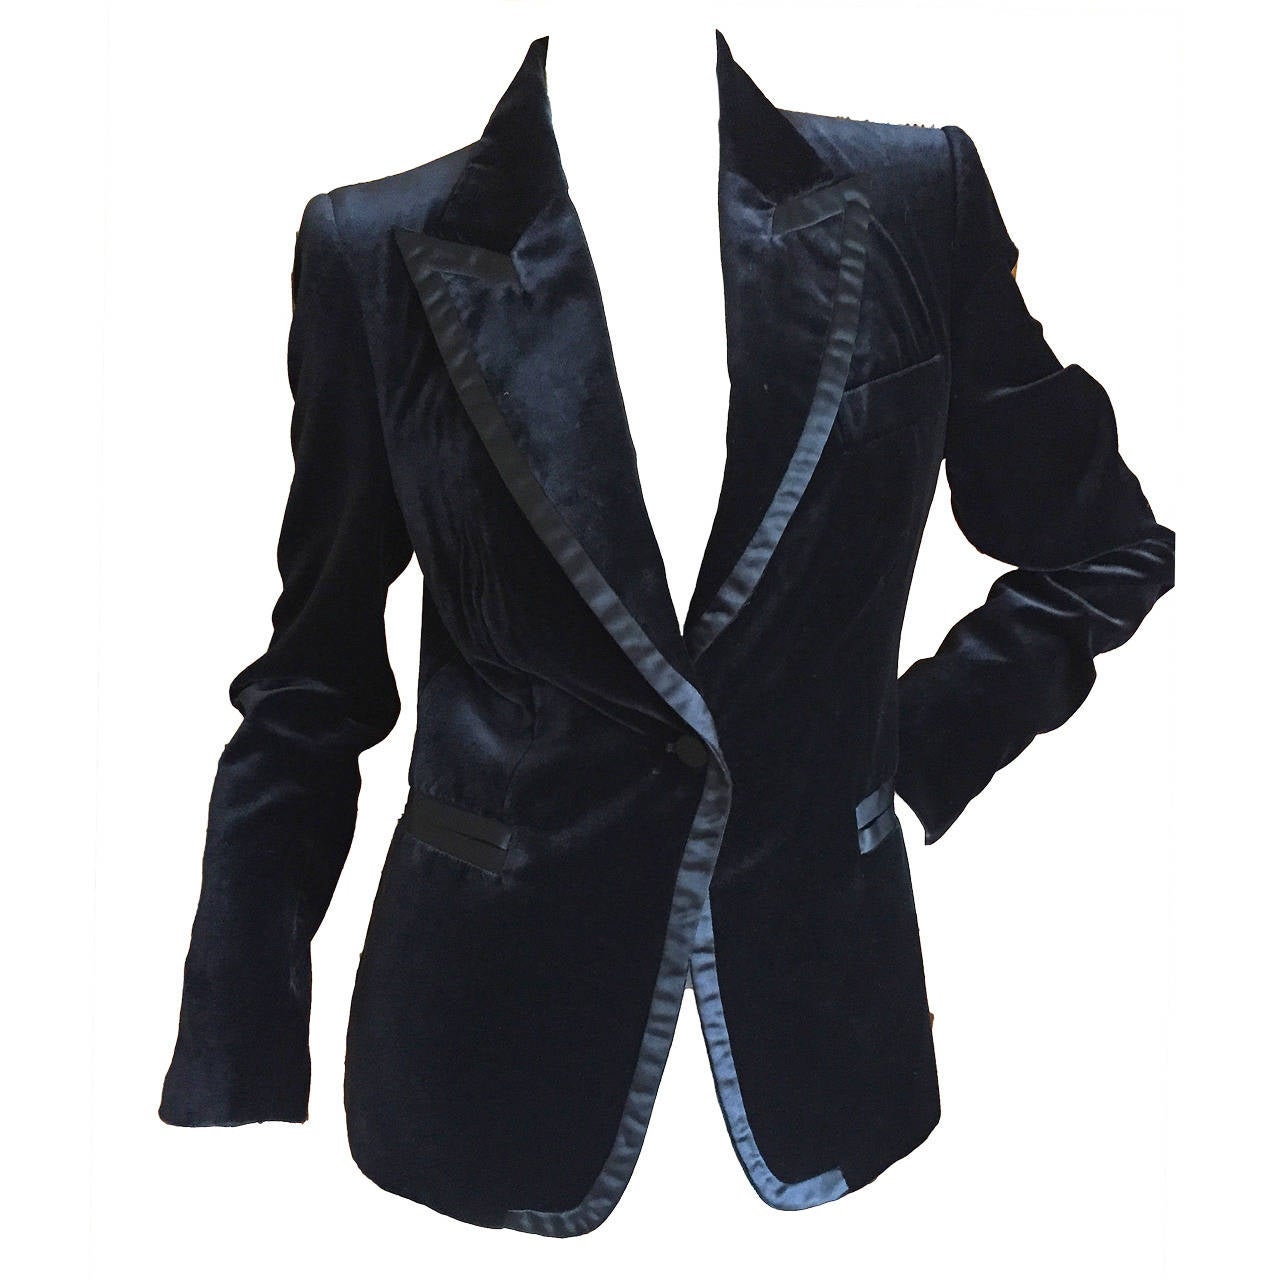 Gucci by Tom Ford 1996 Black Velvet Tuxedo Jacket